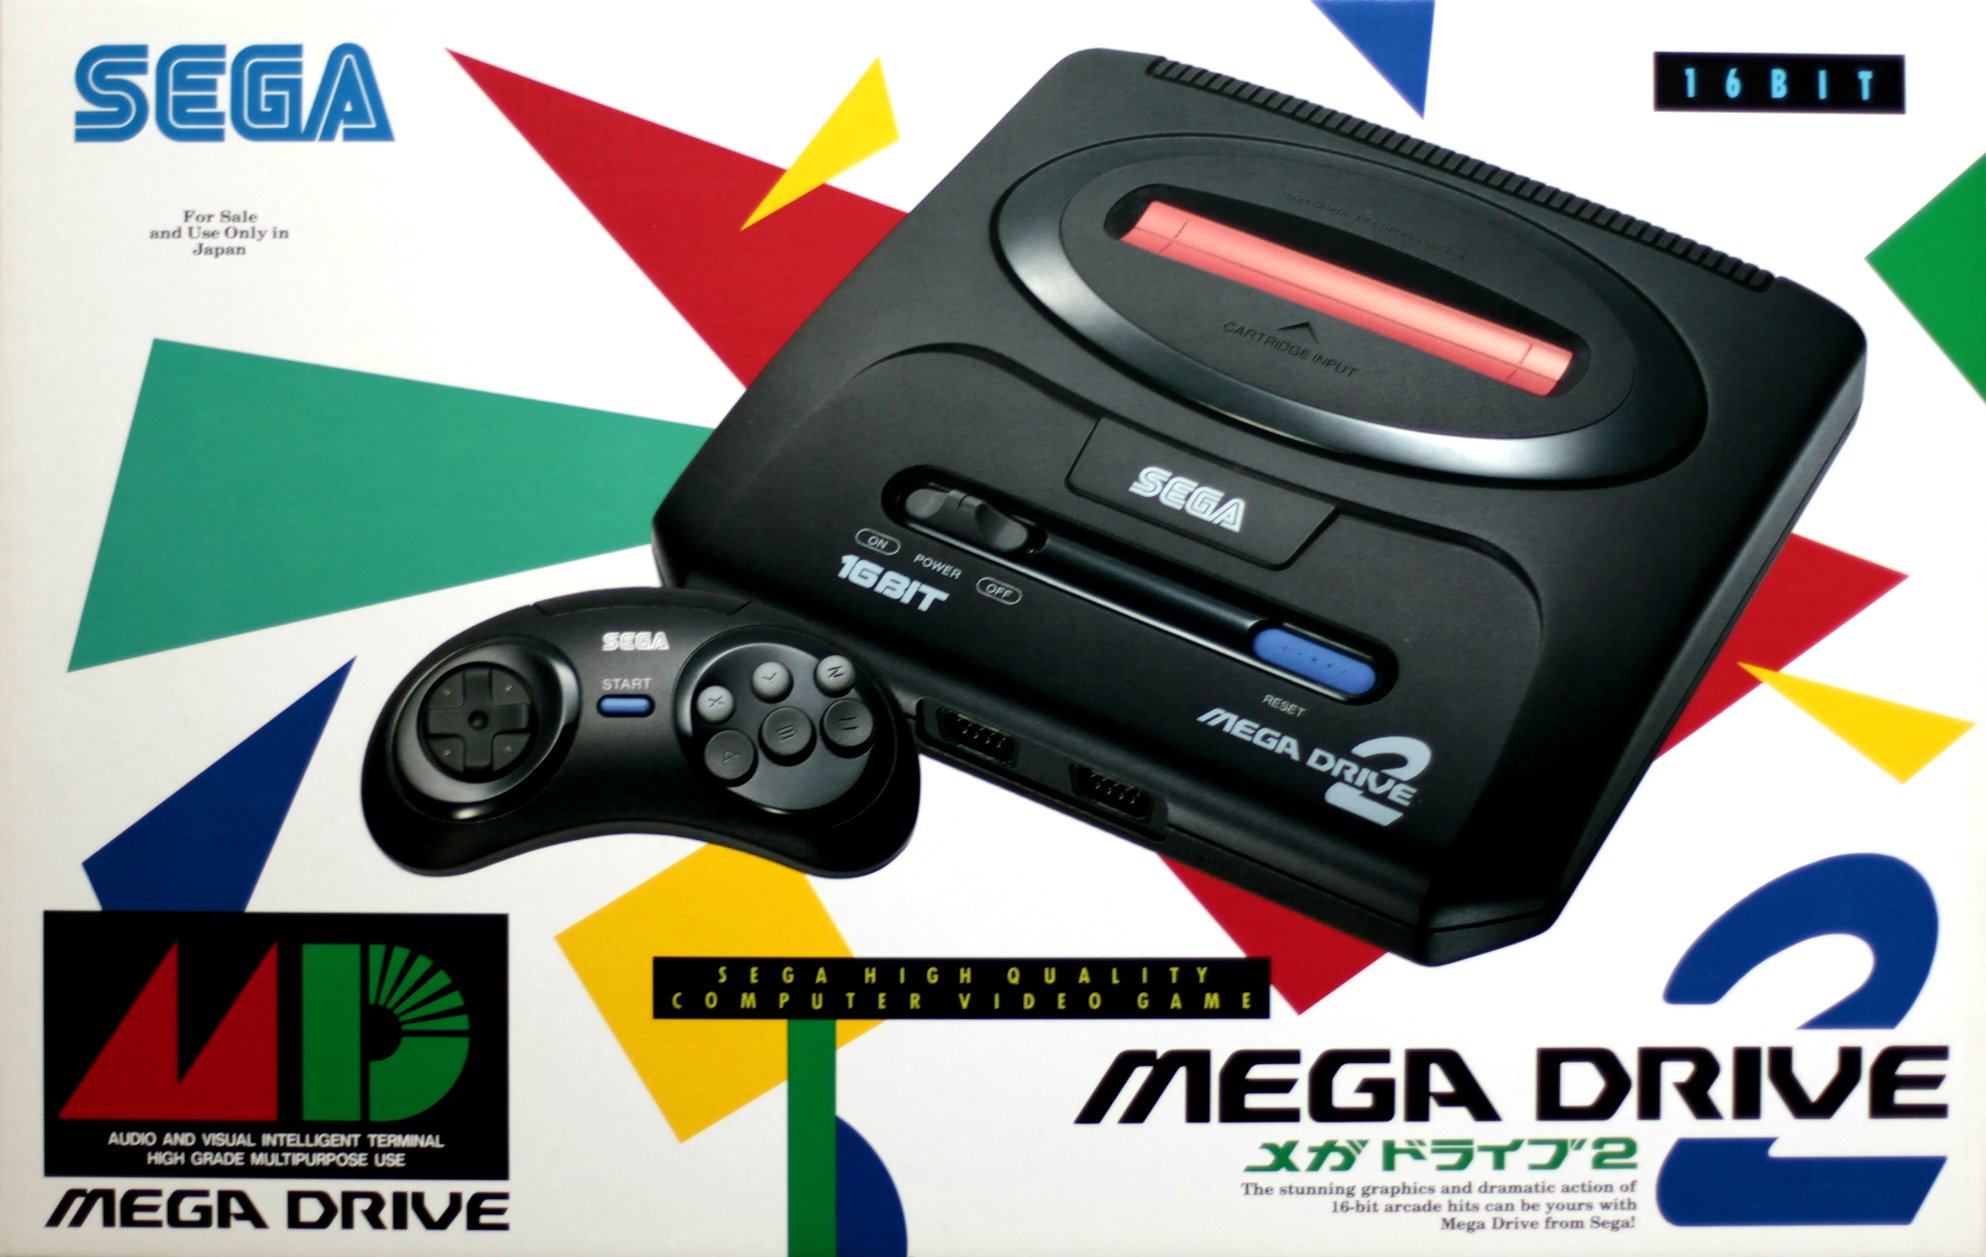 Sega mega drive and genesis classics steam обзор фото 50